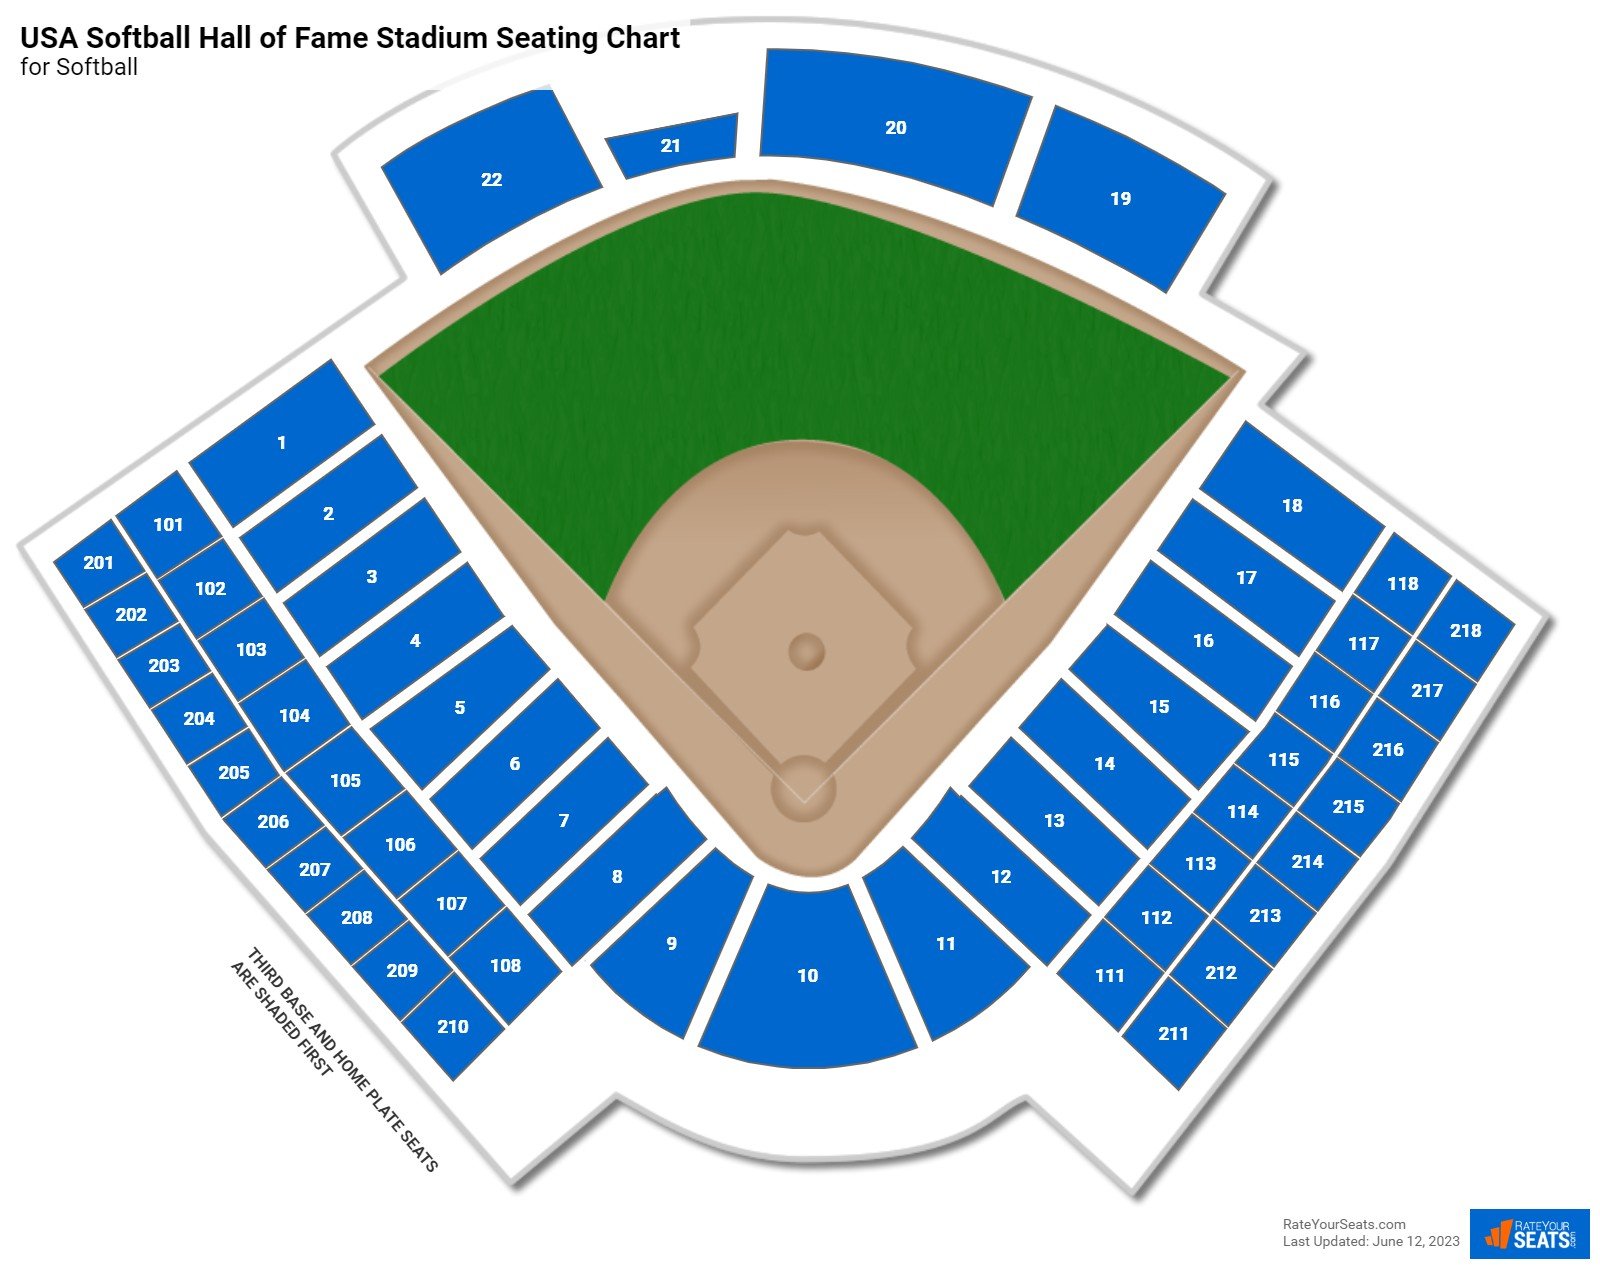 USA Softball Hall of Fame Stadium Softball Seating Chart